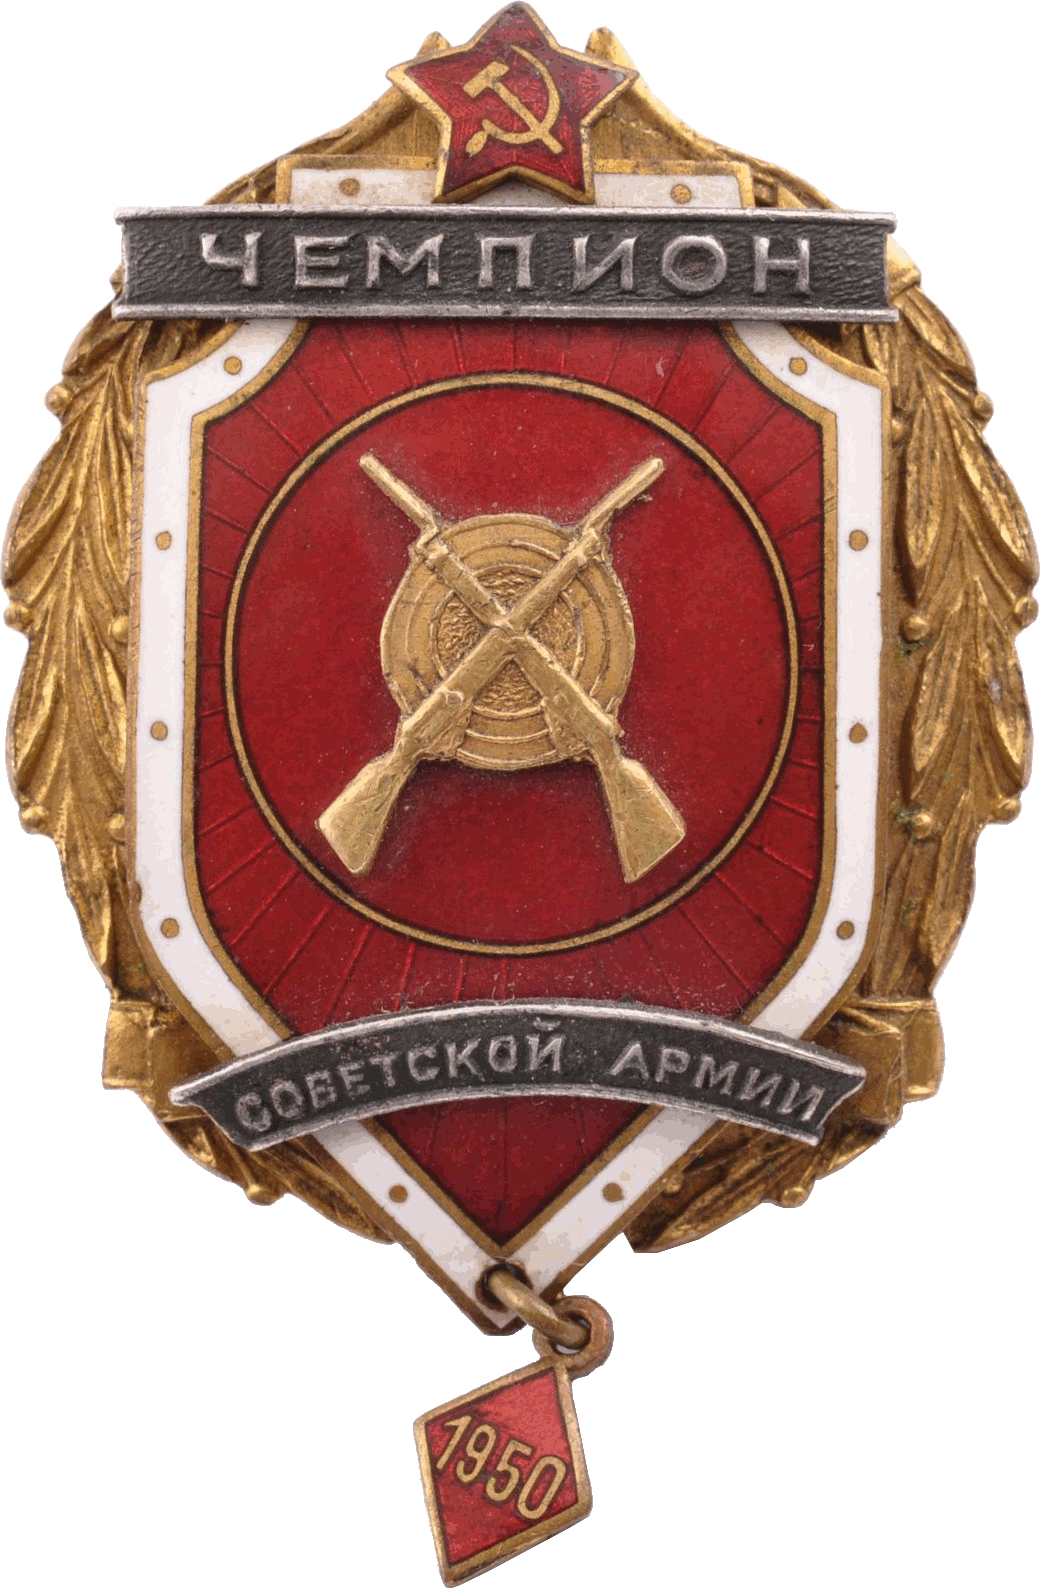 Нагрудный знак Чемпион Советской Армии 1950 